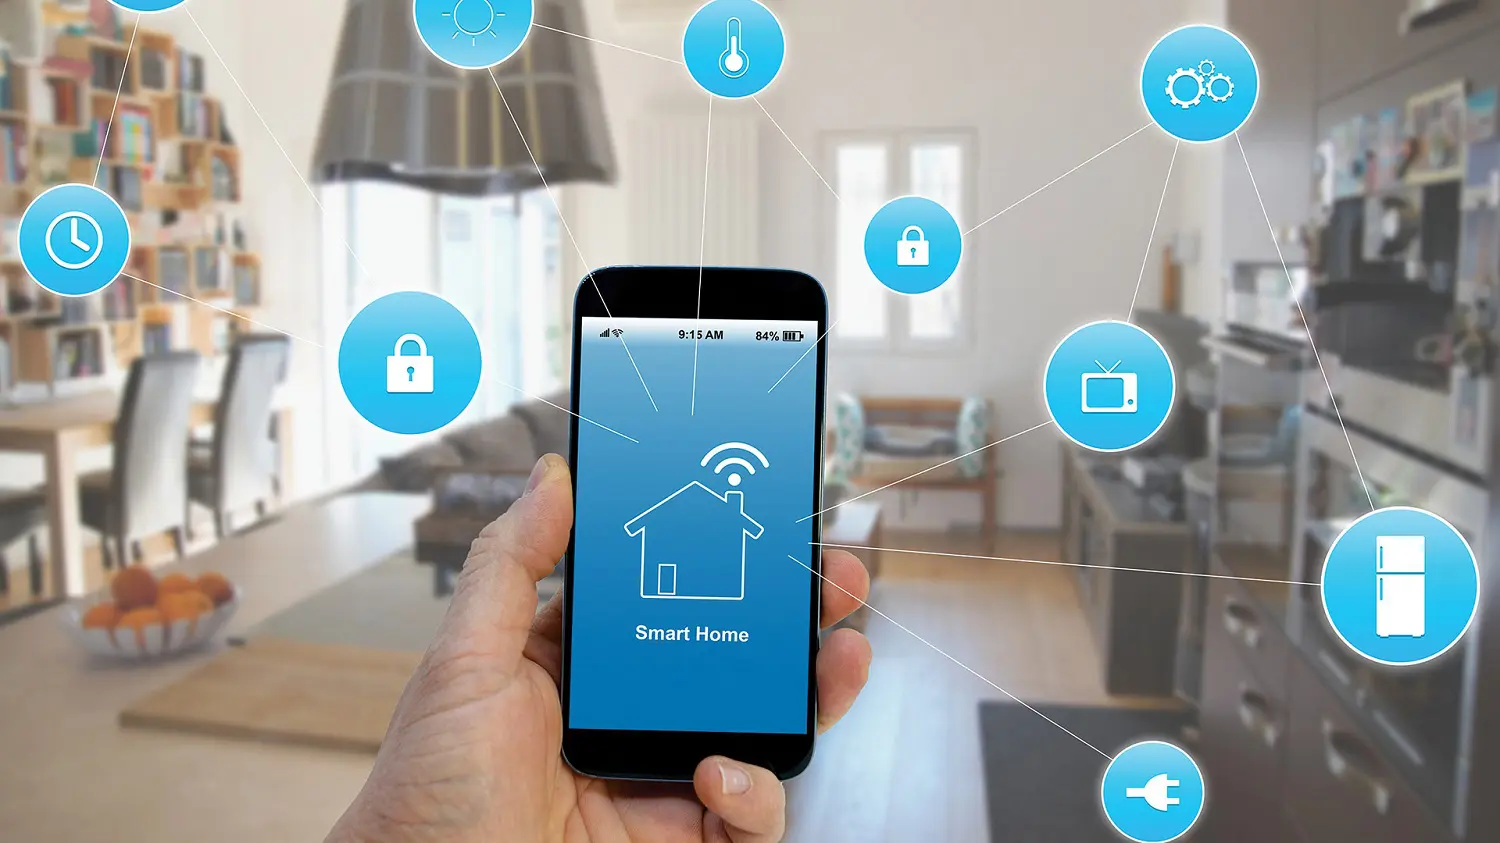 هل ستتعاون الشركات التقنية معًا لتطوير معيار اتصال موحد لأجهزة المنزل الذكي؟